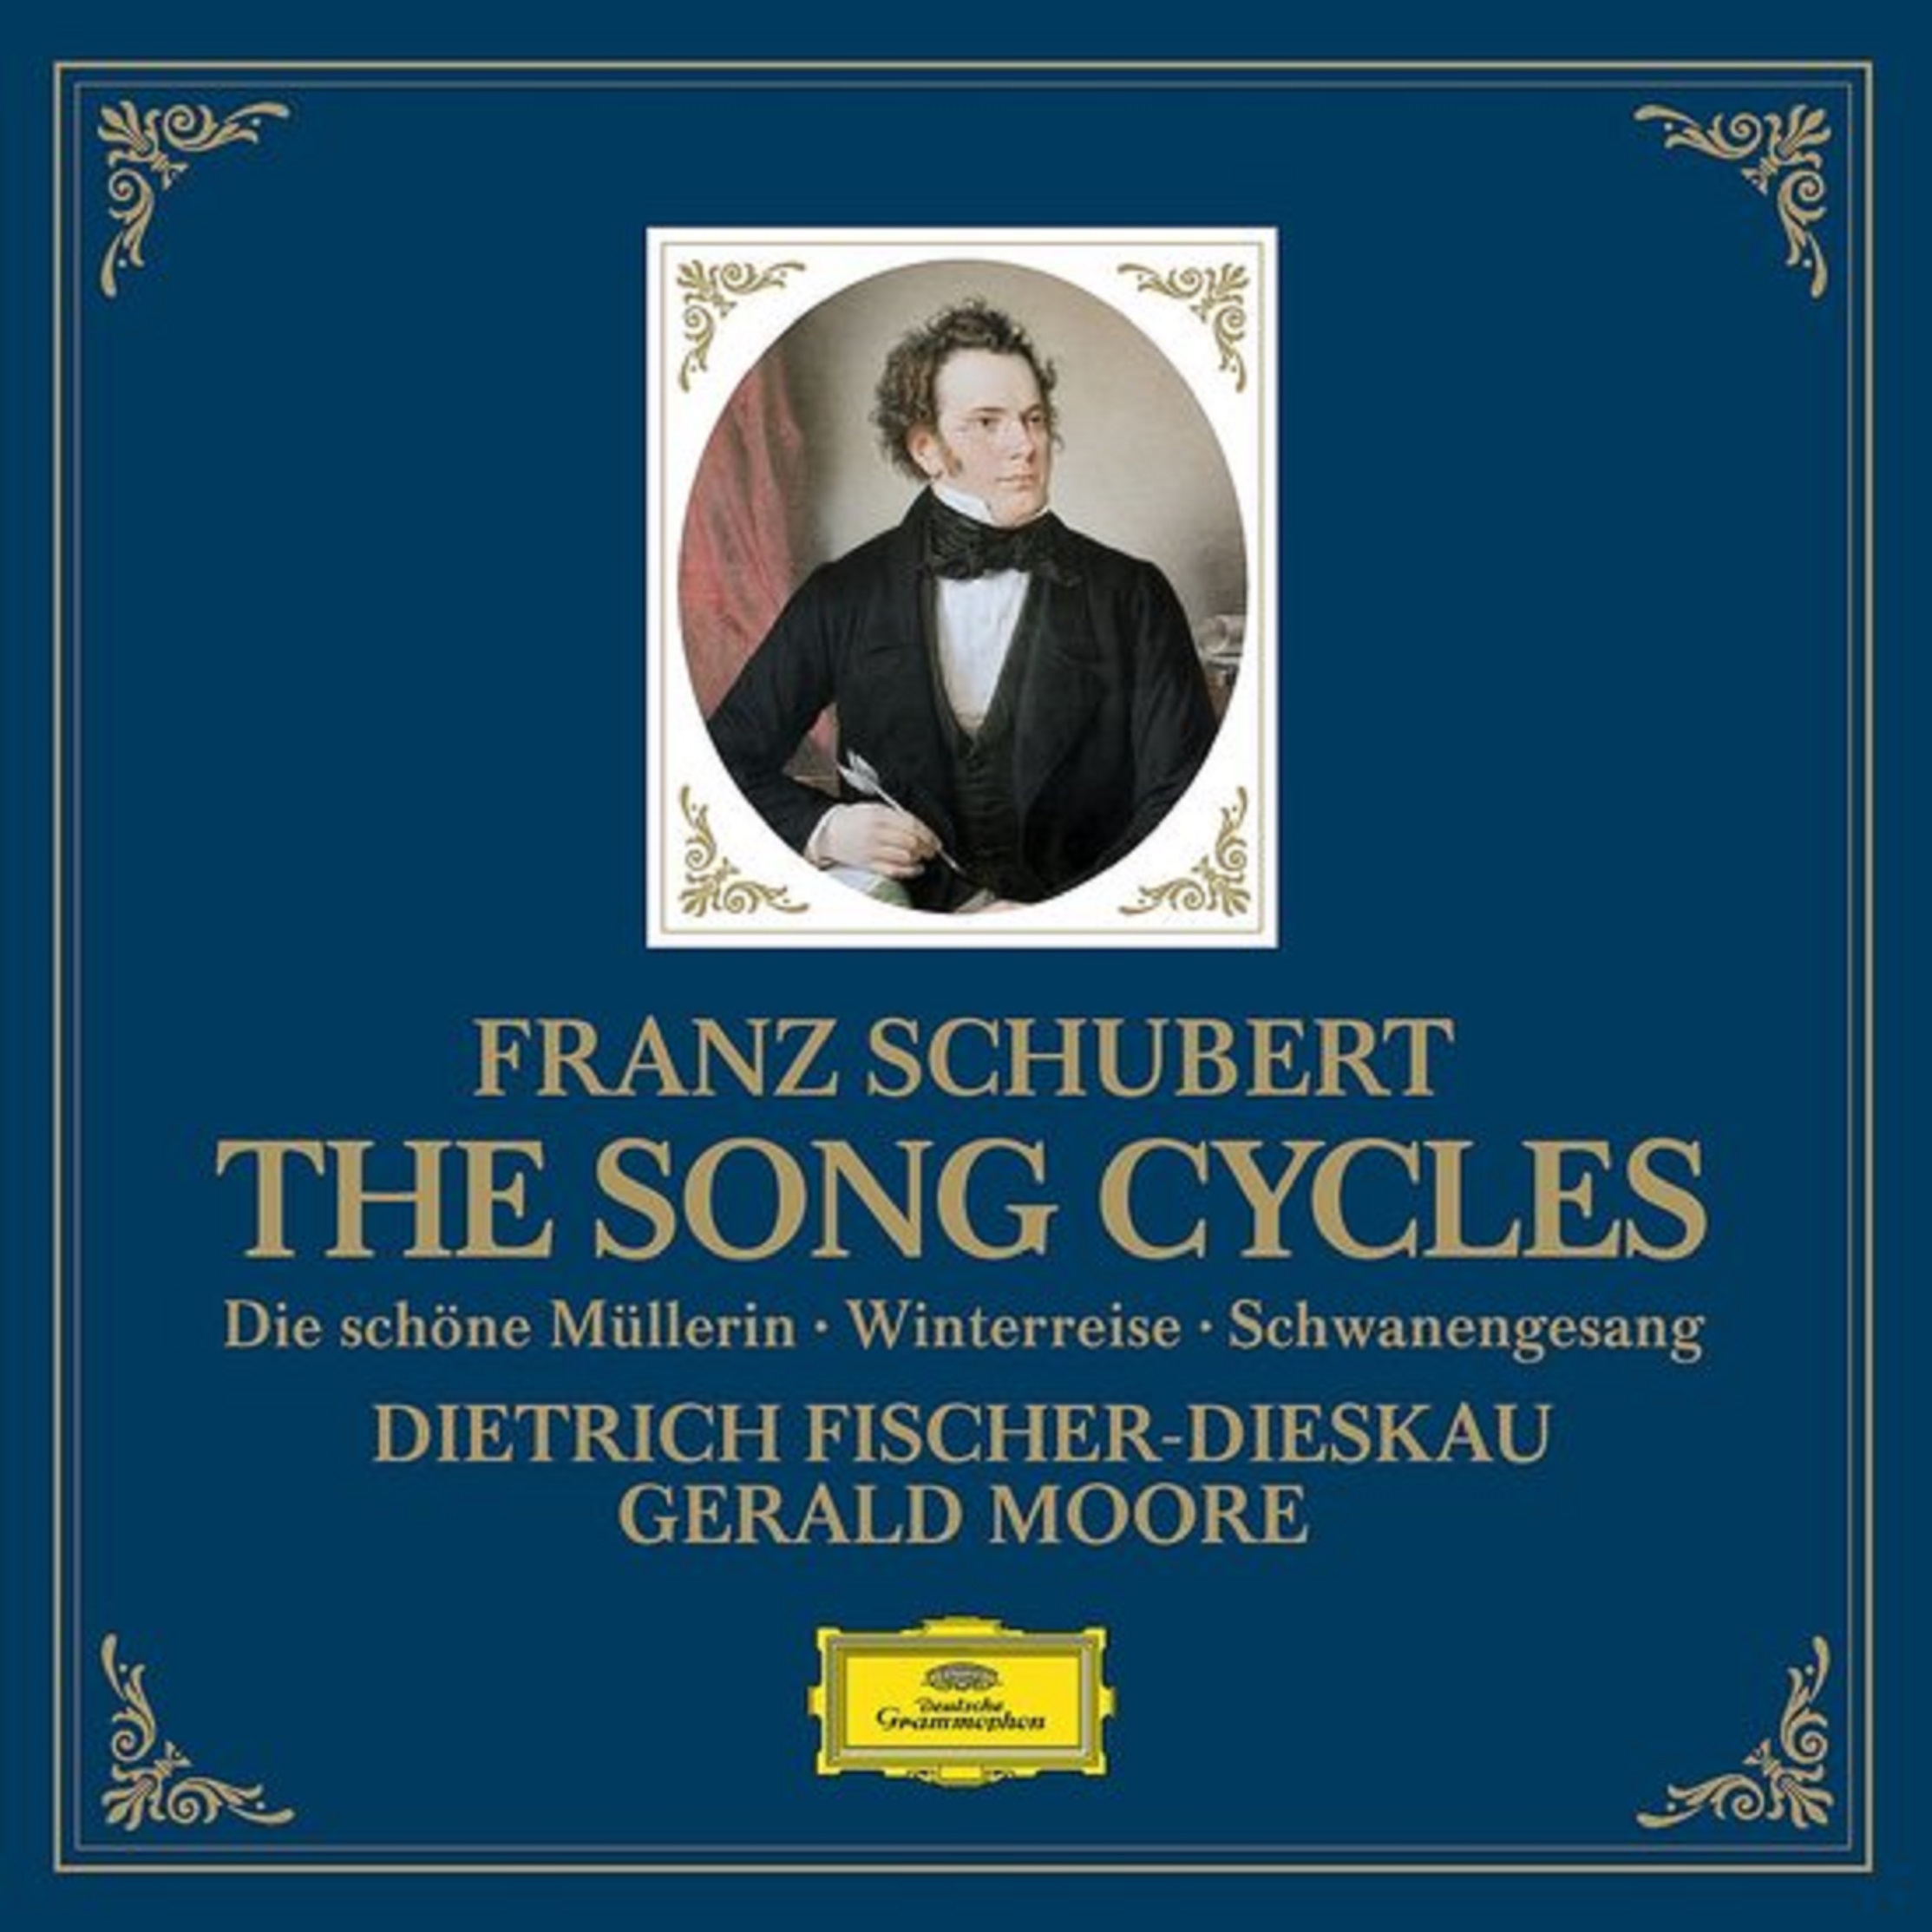 Schubert: The Song Cycles - Die Schöne Mullerin | Gerald Moore, Dietrich Fischer-Dieskau